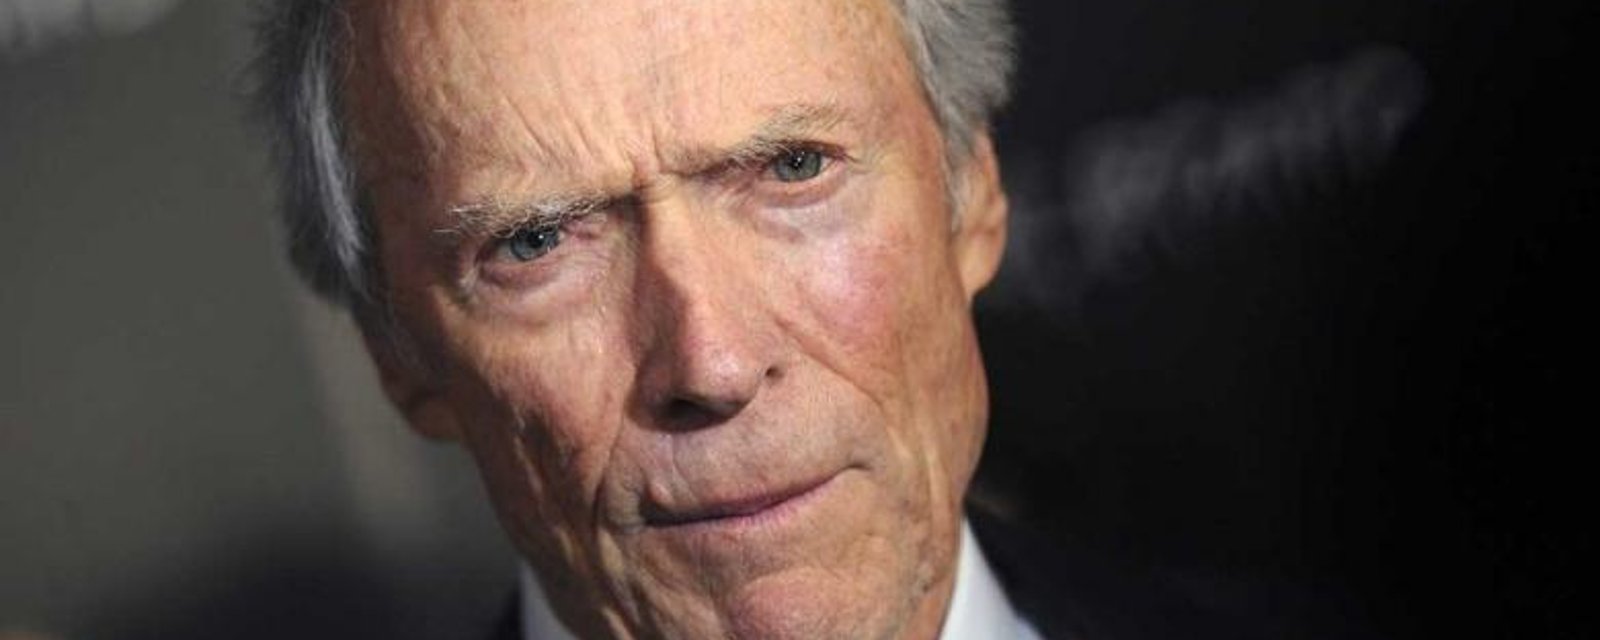 [PHOTOS] Le fils de Clint Eastwood est identique à son père, et SEXY à mort!